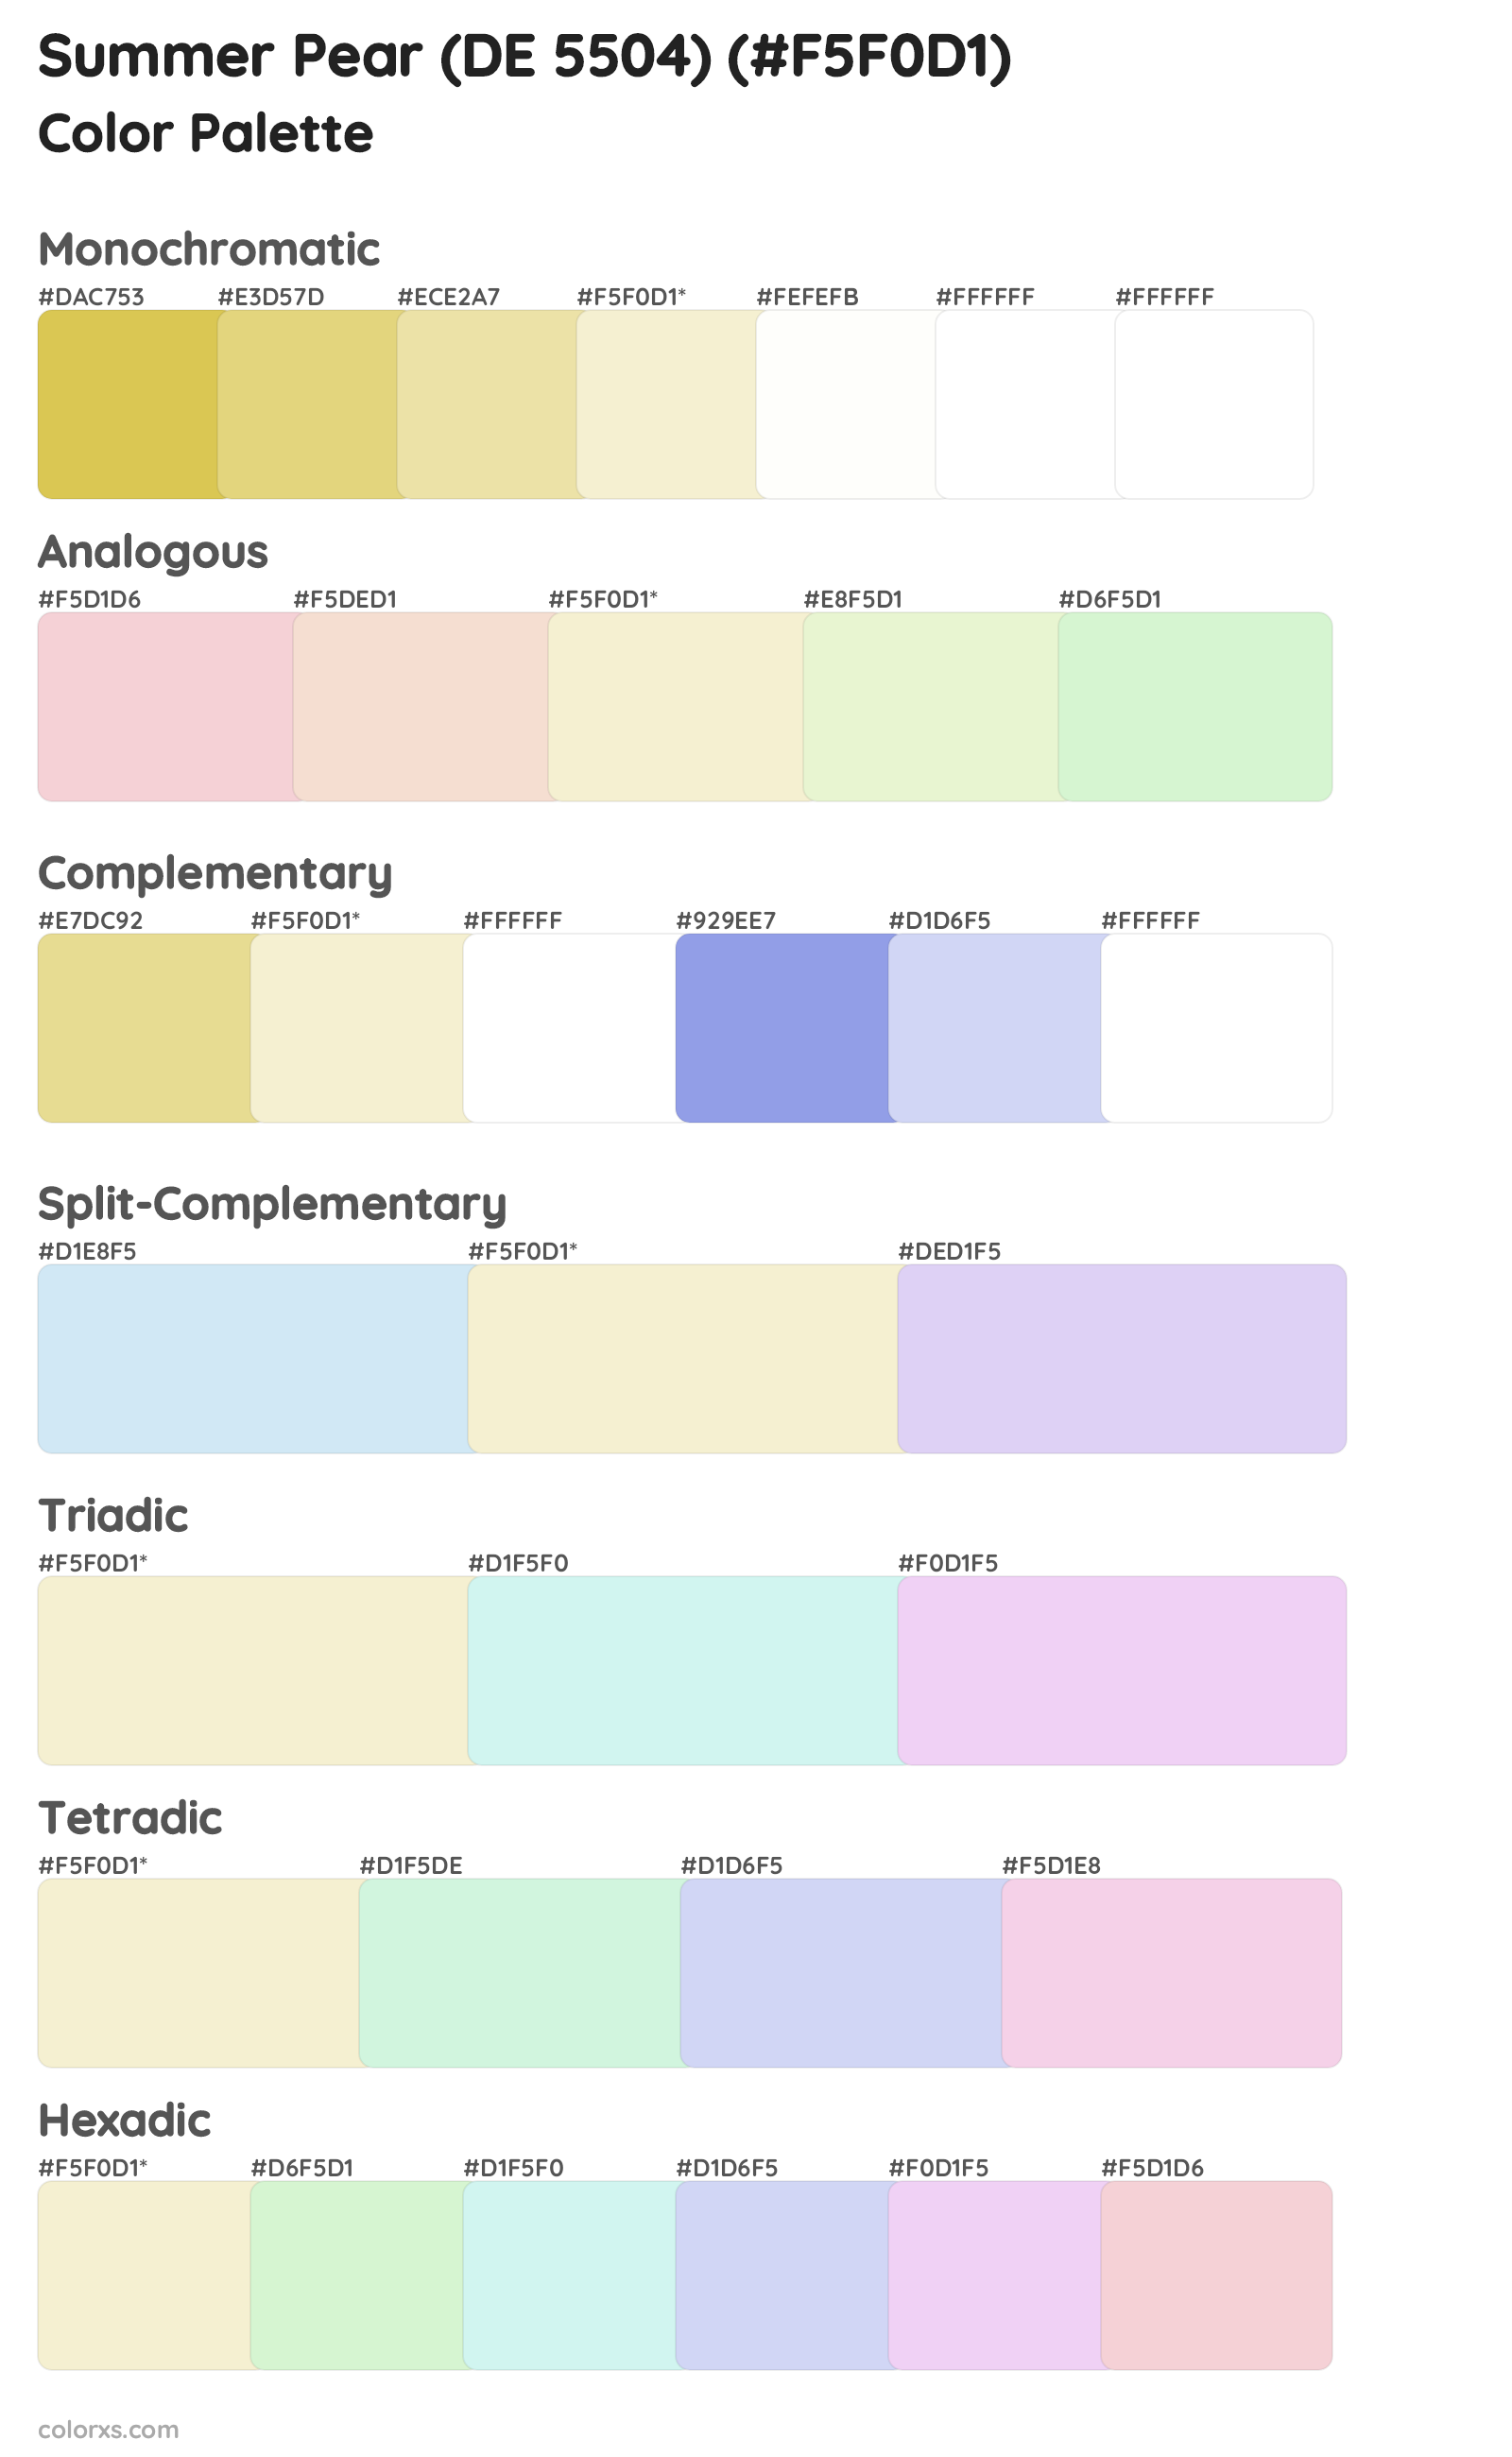 Summer Pear (DE 5504) Color Scheme Palettes